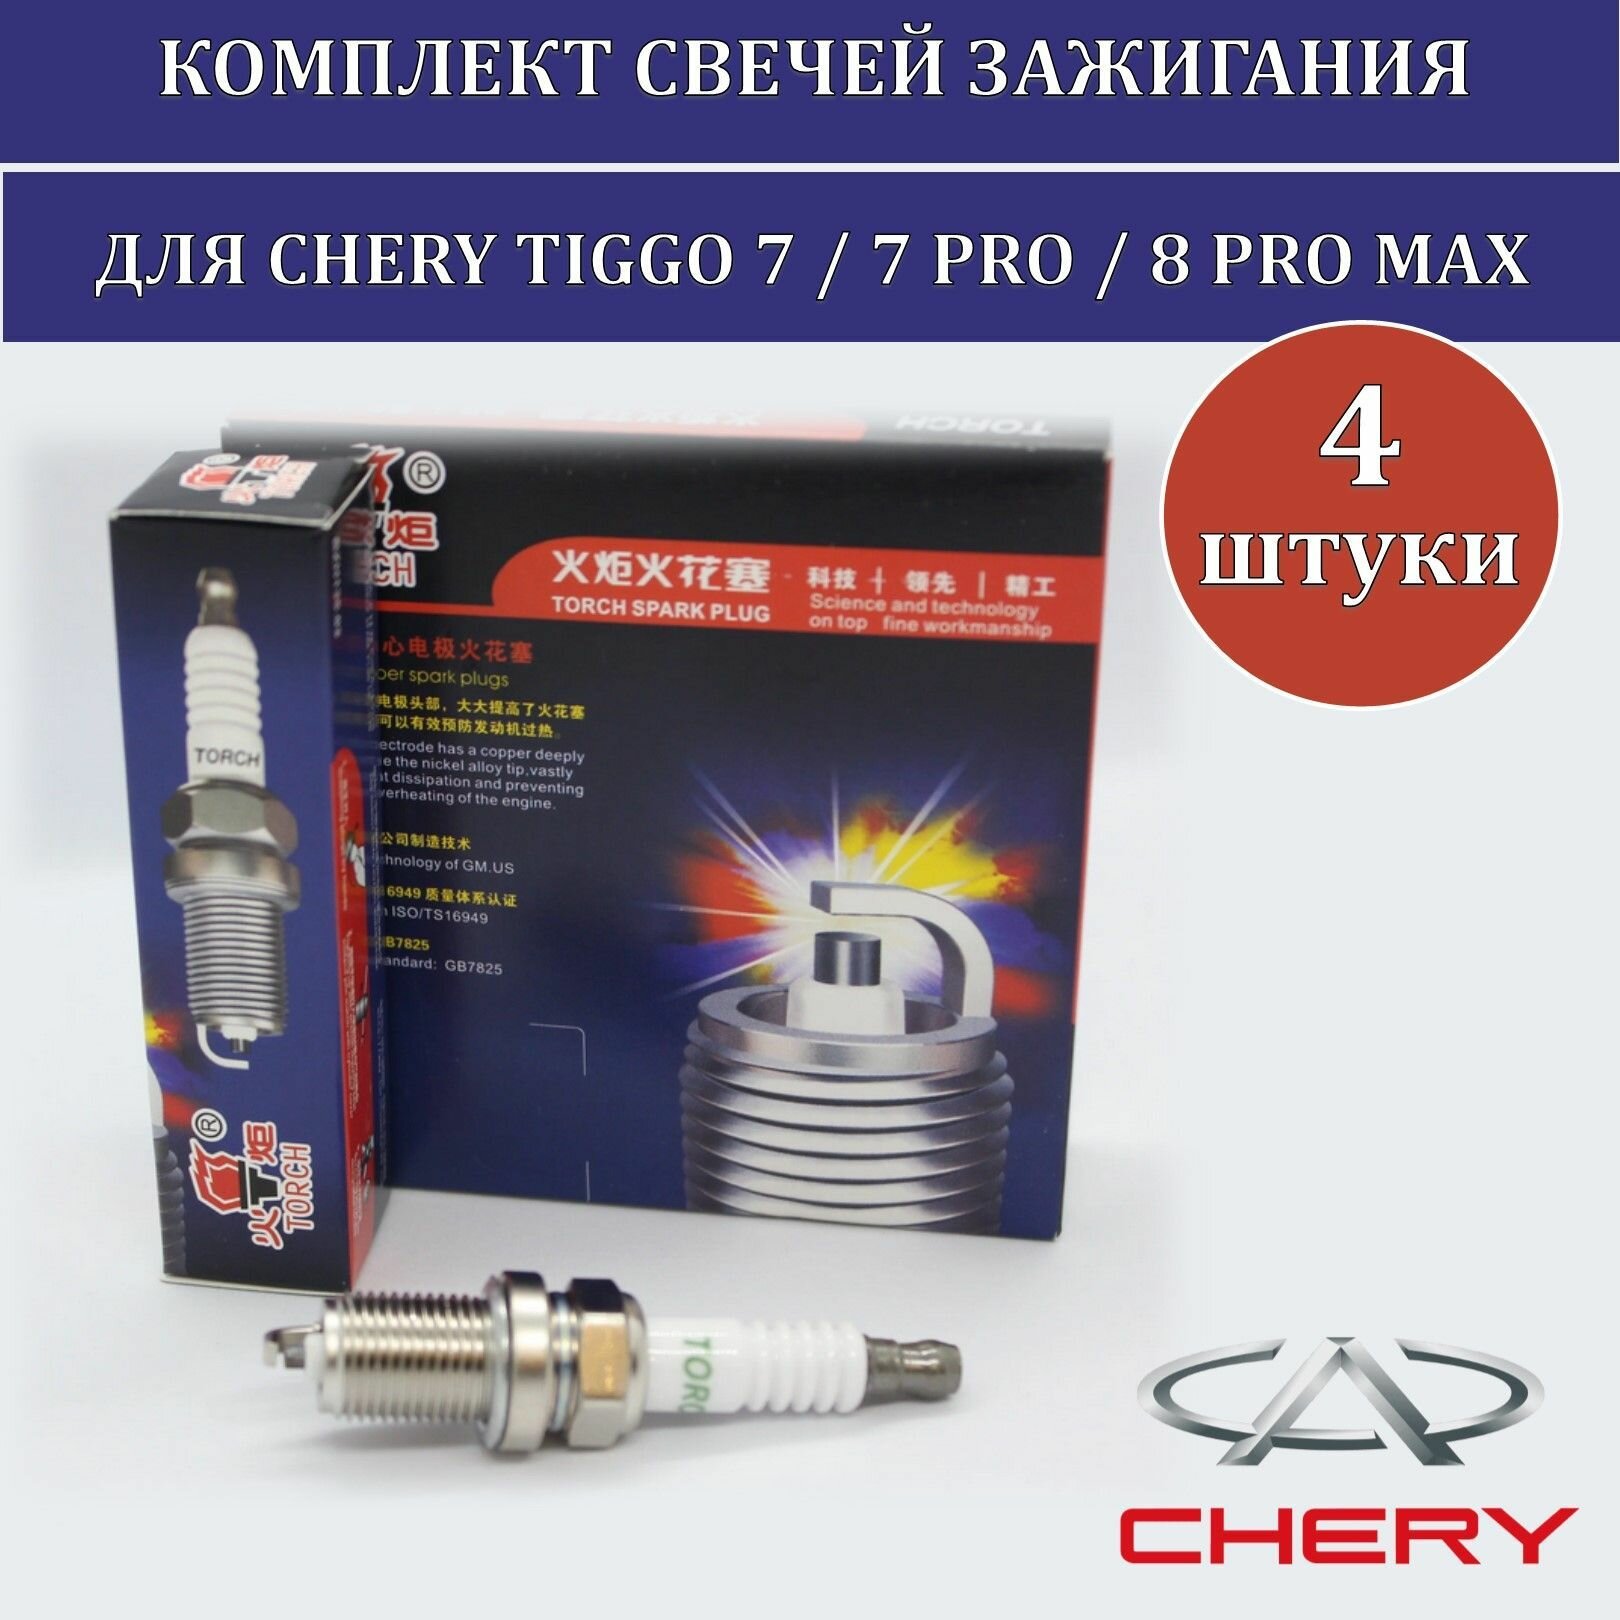 Комплект свечей зажигания для Chery Tiggo 7, Chery Tiggo 7 PRO, Chery Tiggo 8 PRO MAX